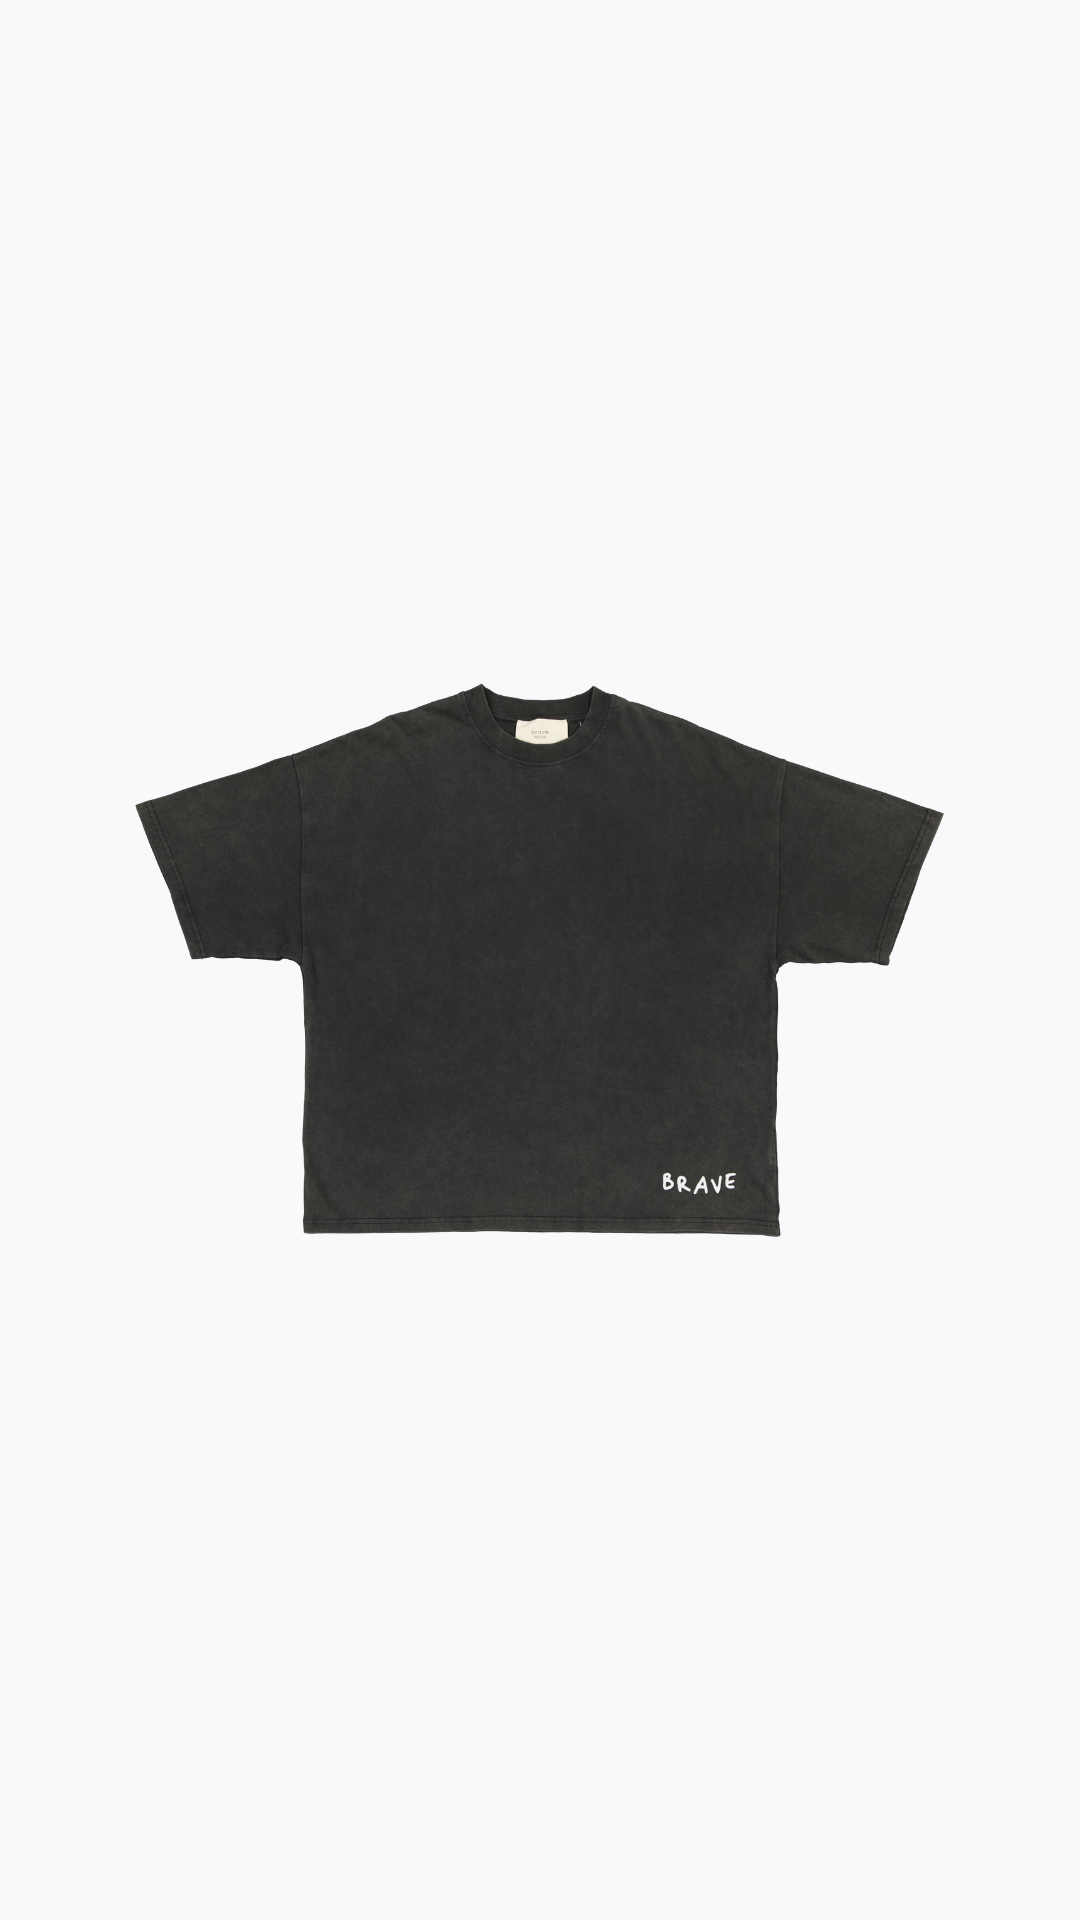 T-Shirt Boxy "Vintage" Noir délavé